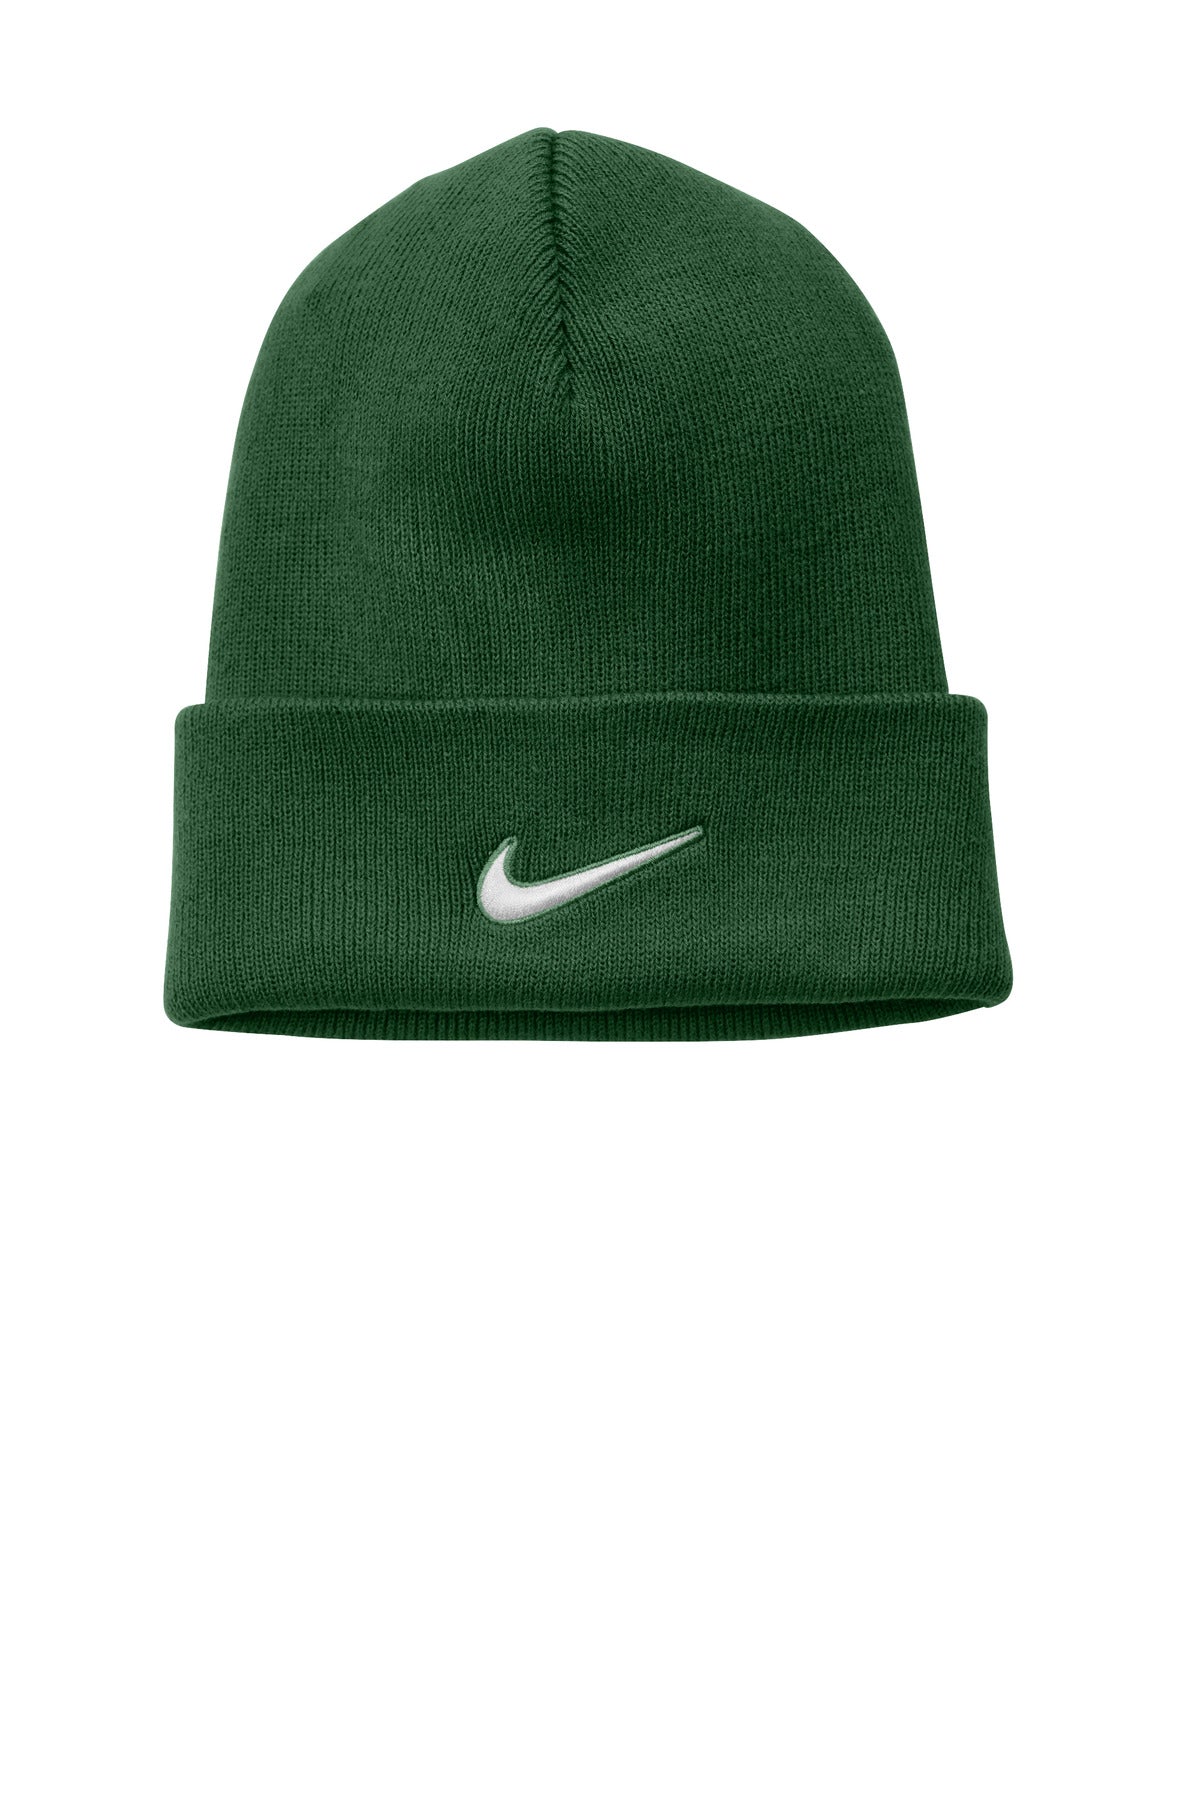 Caps Gorge Green OSFA Nike